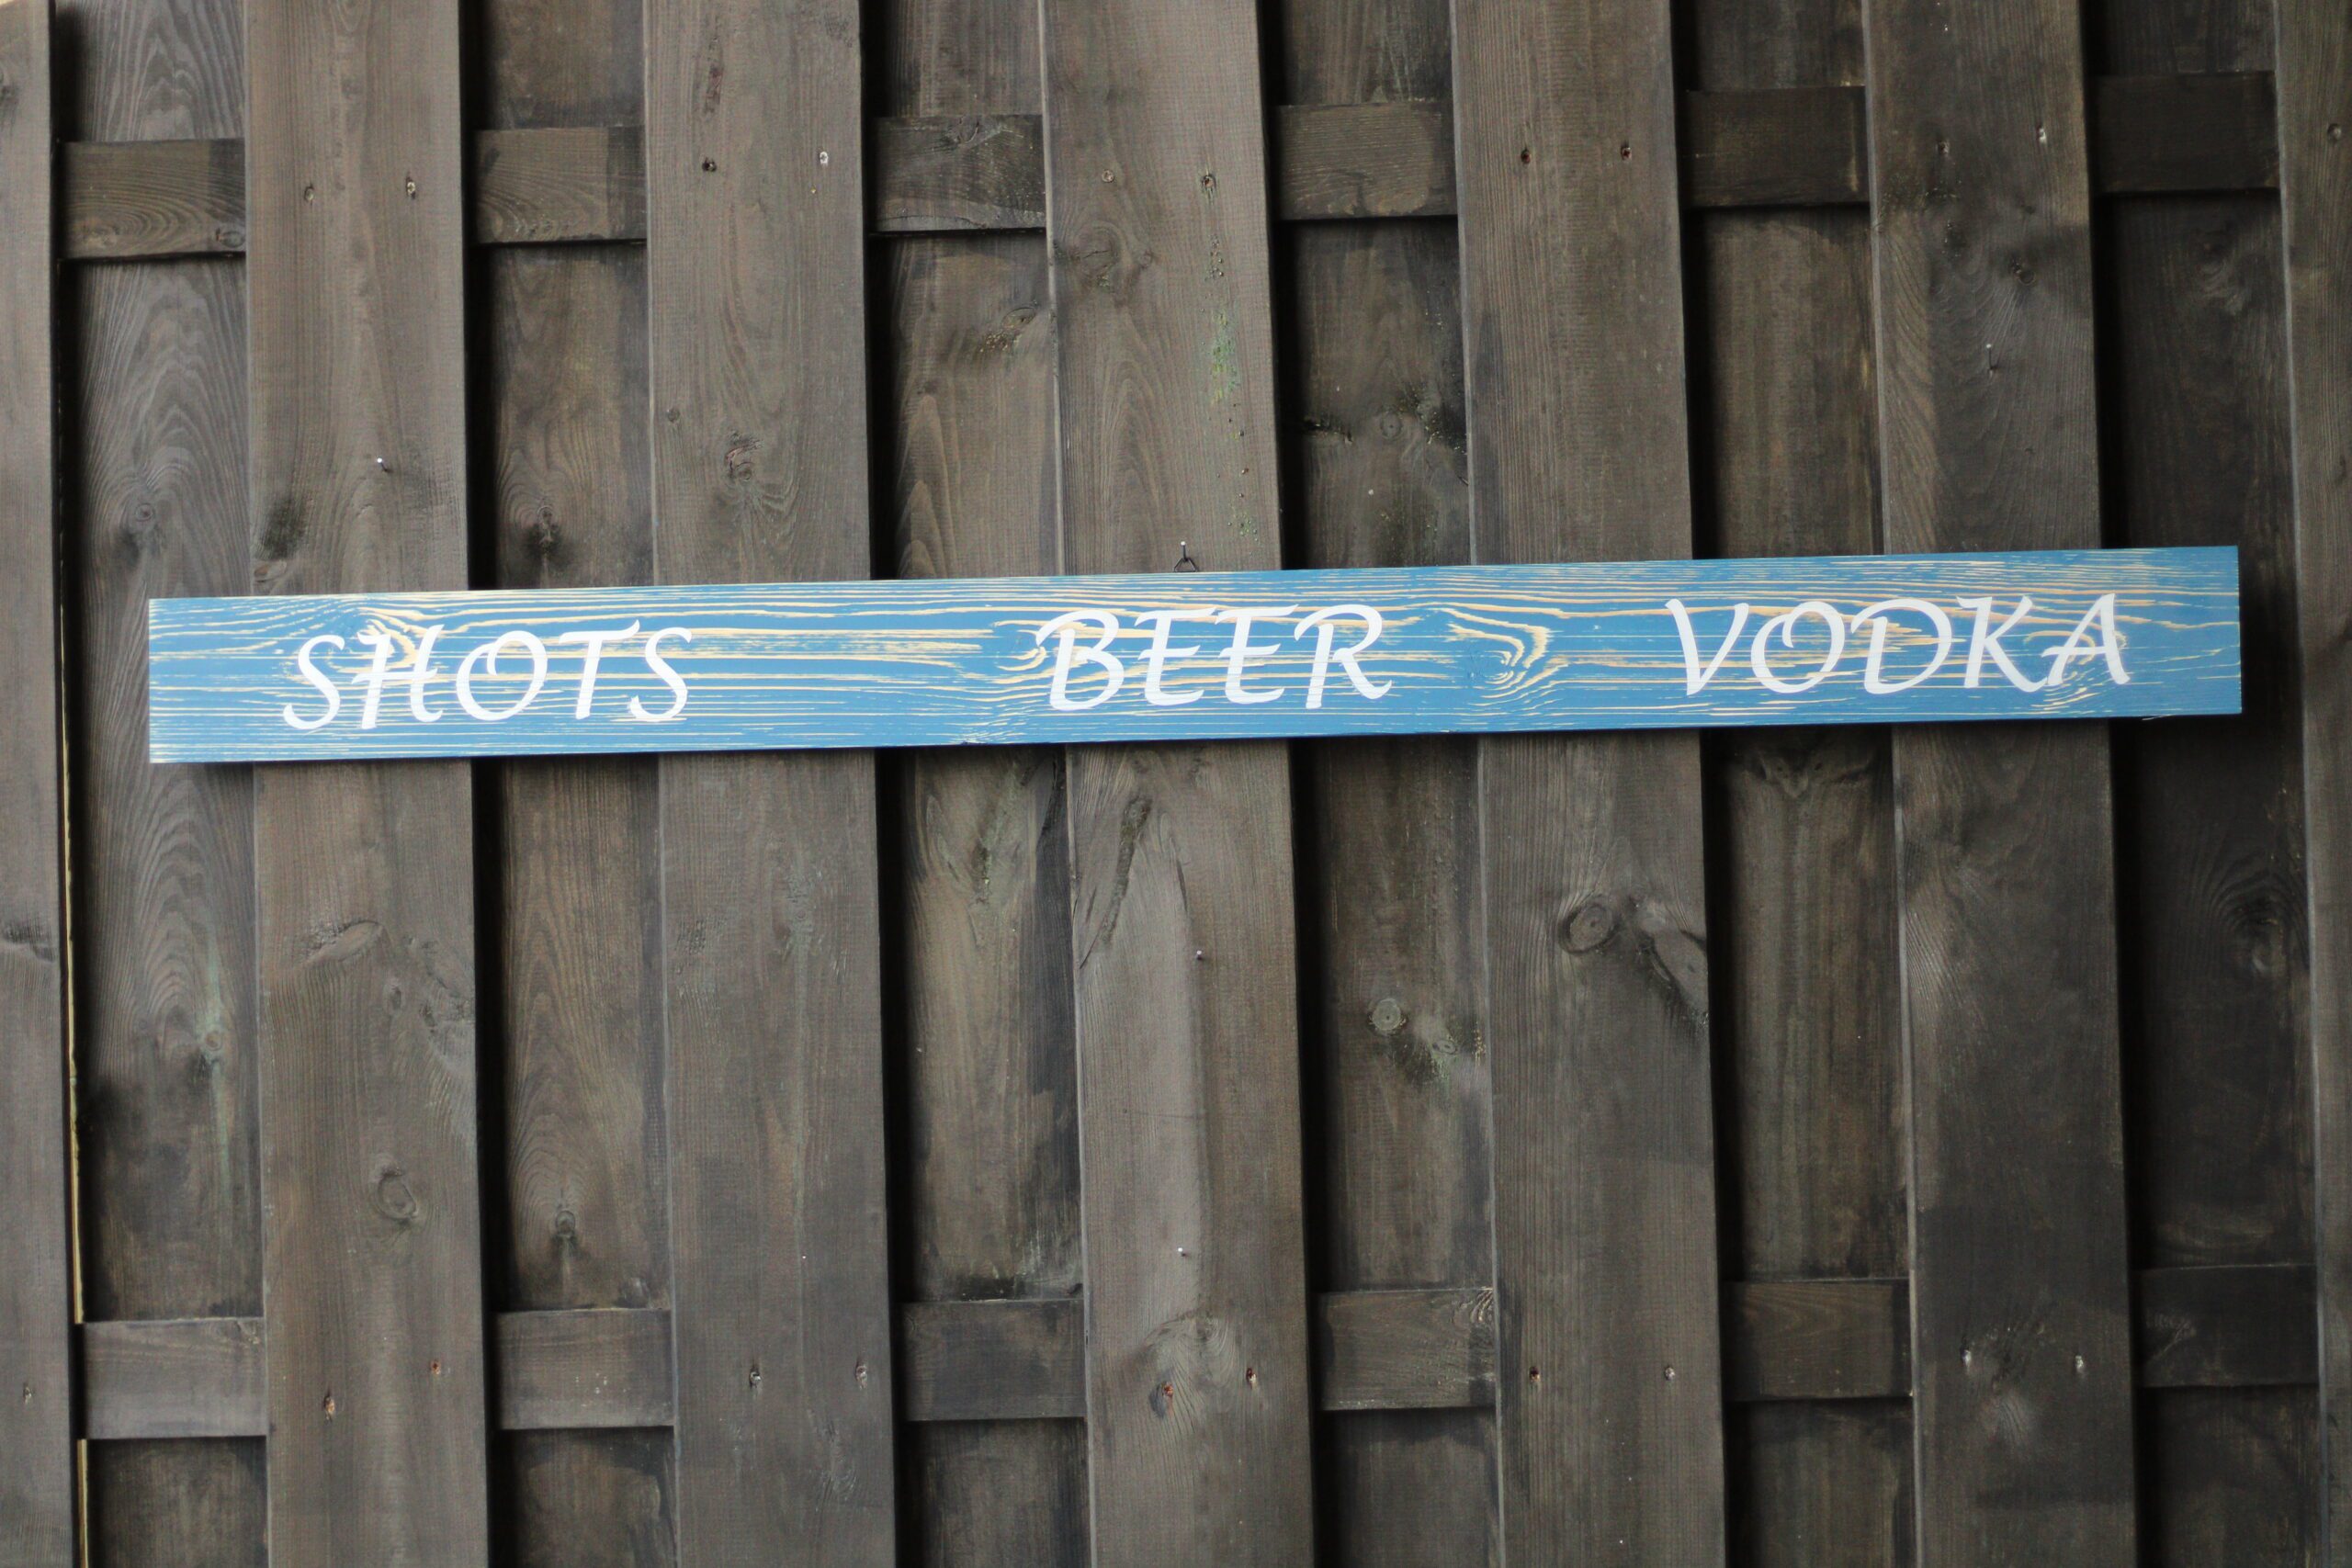 Shots Beer Vodka – Houten plank